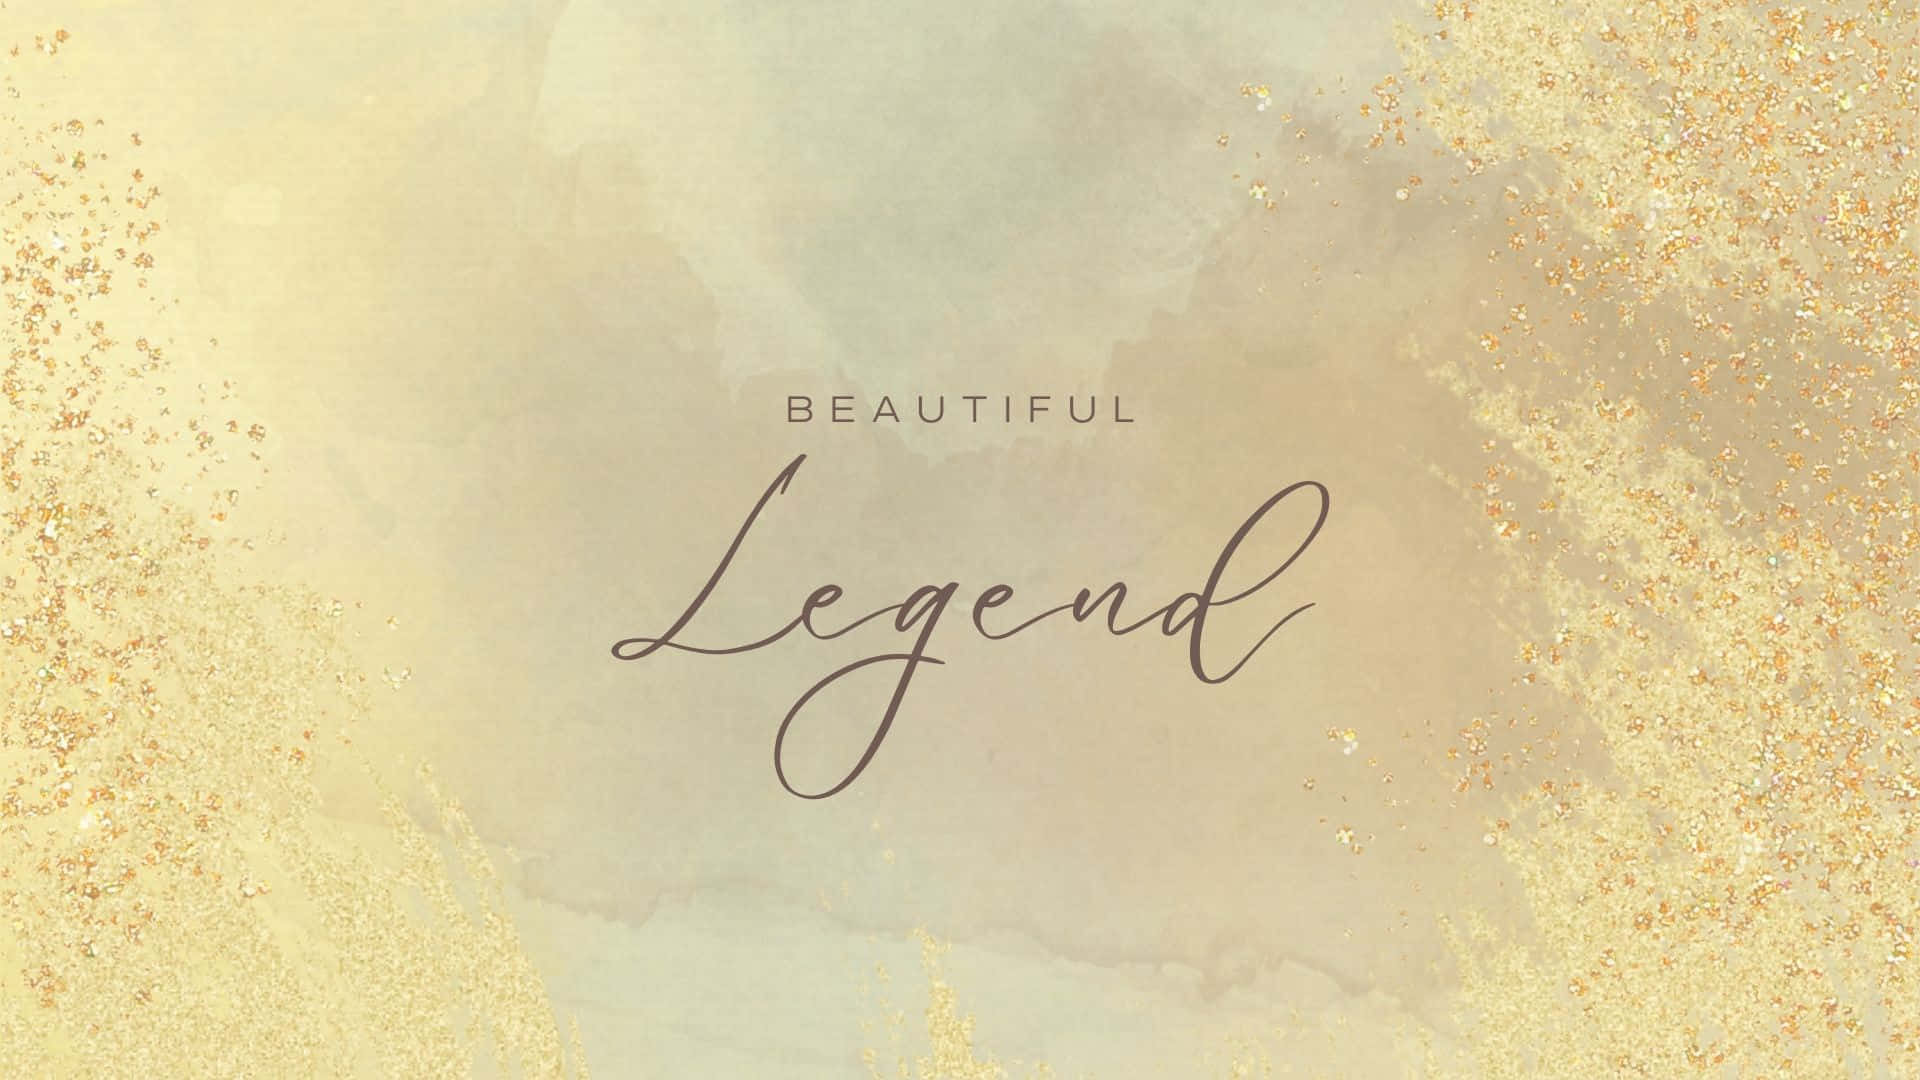 Beautiful Legend - Gold Glitter